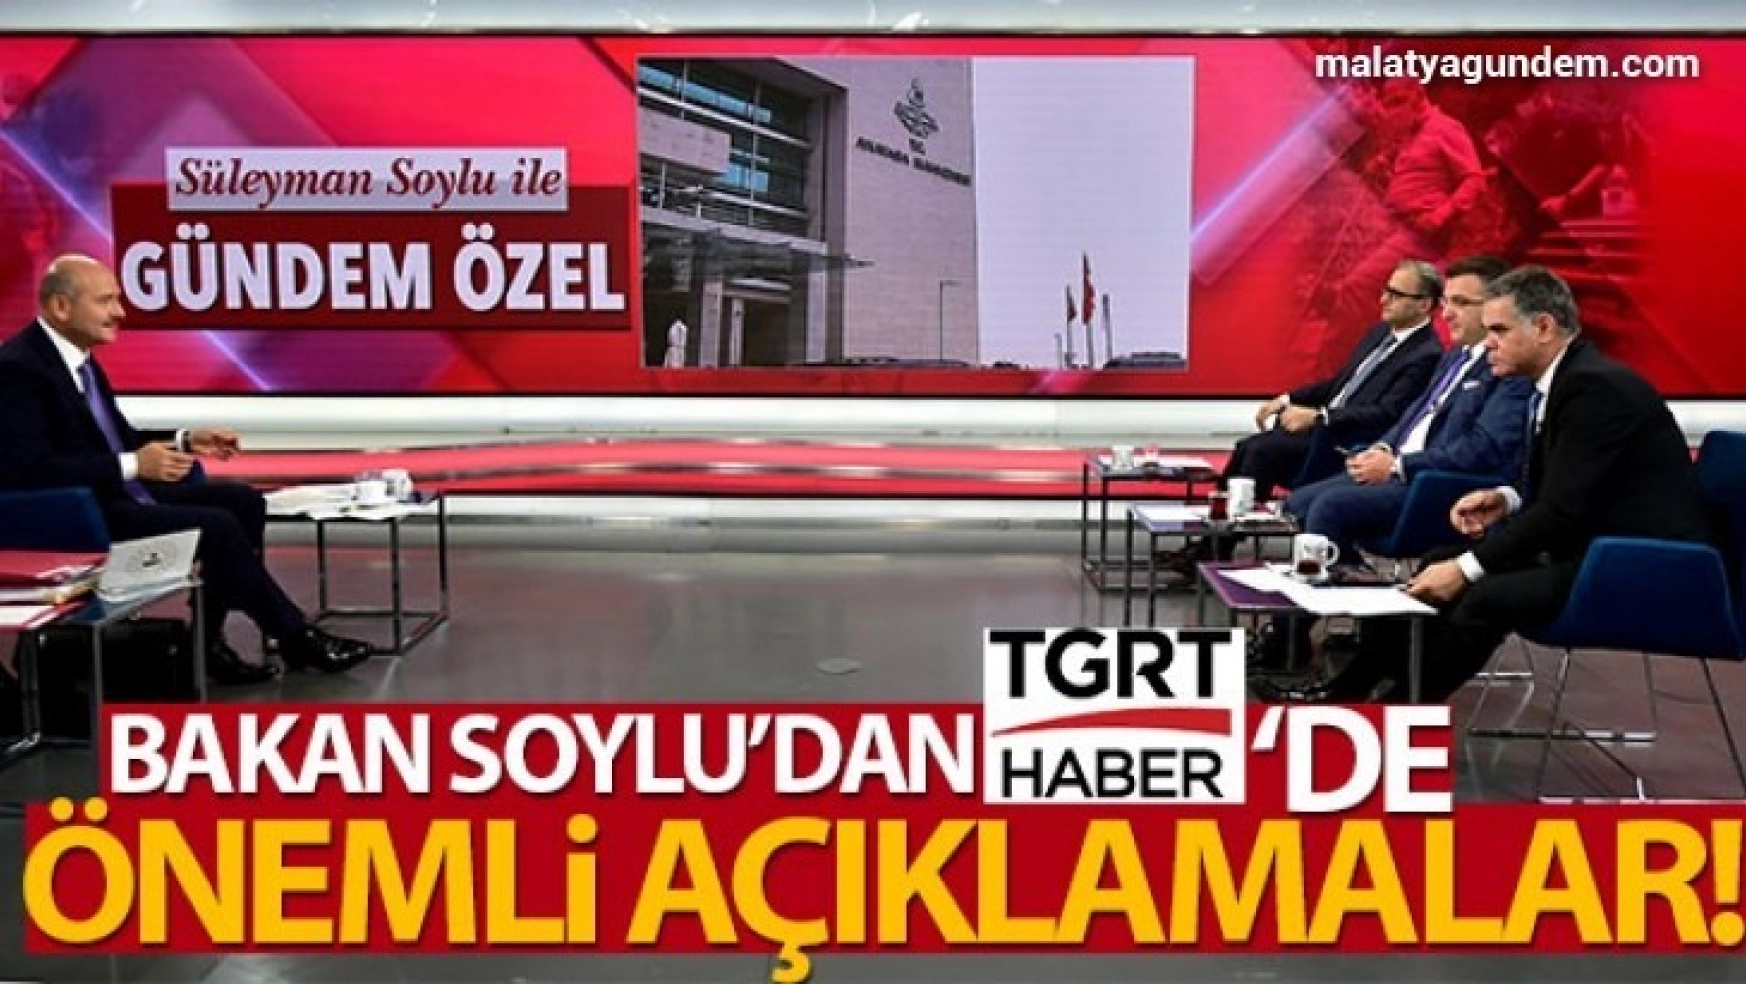 İçişleri Bakanı Süleyman Soylu, TGRT Haber canlı yayınında soruları cevapladı